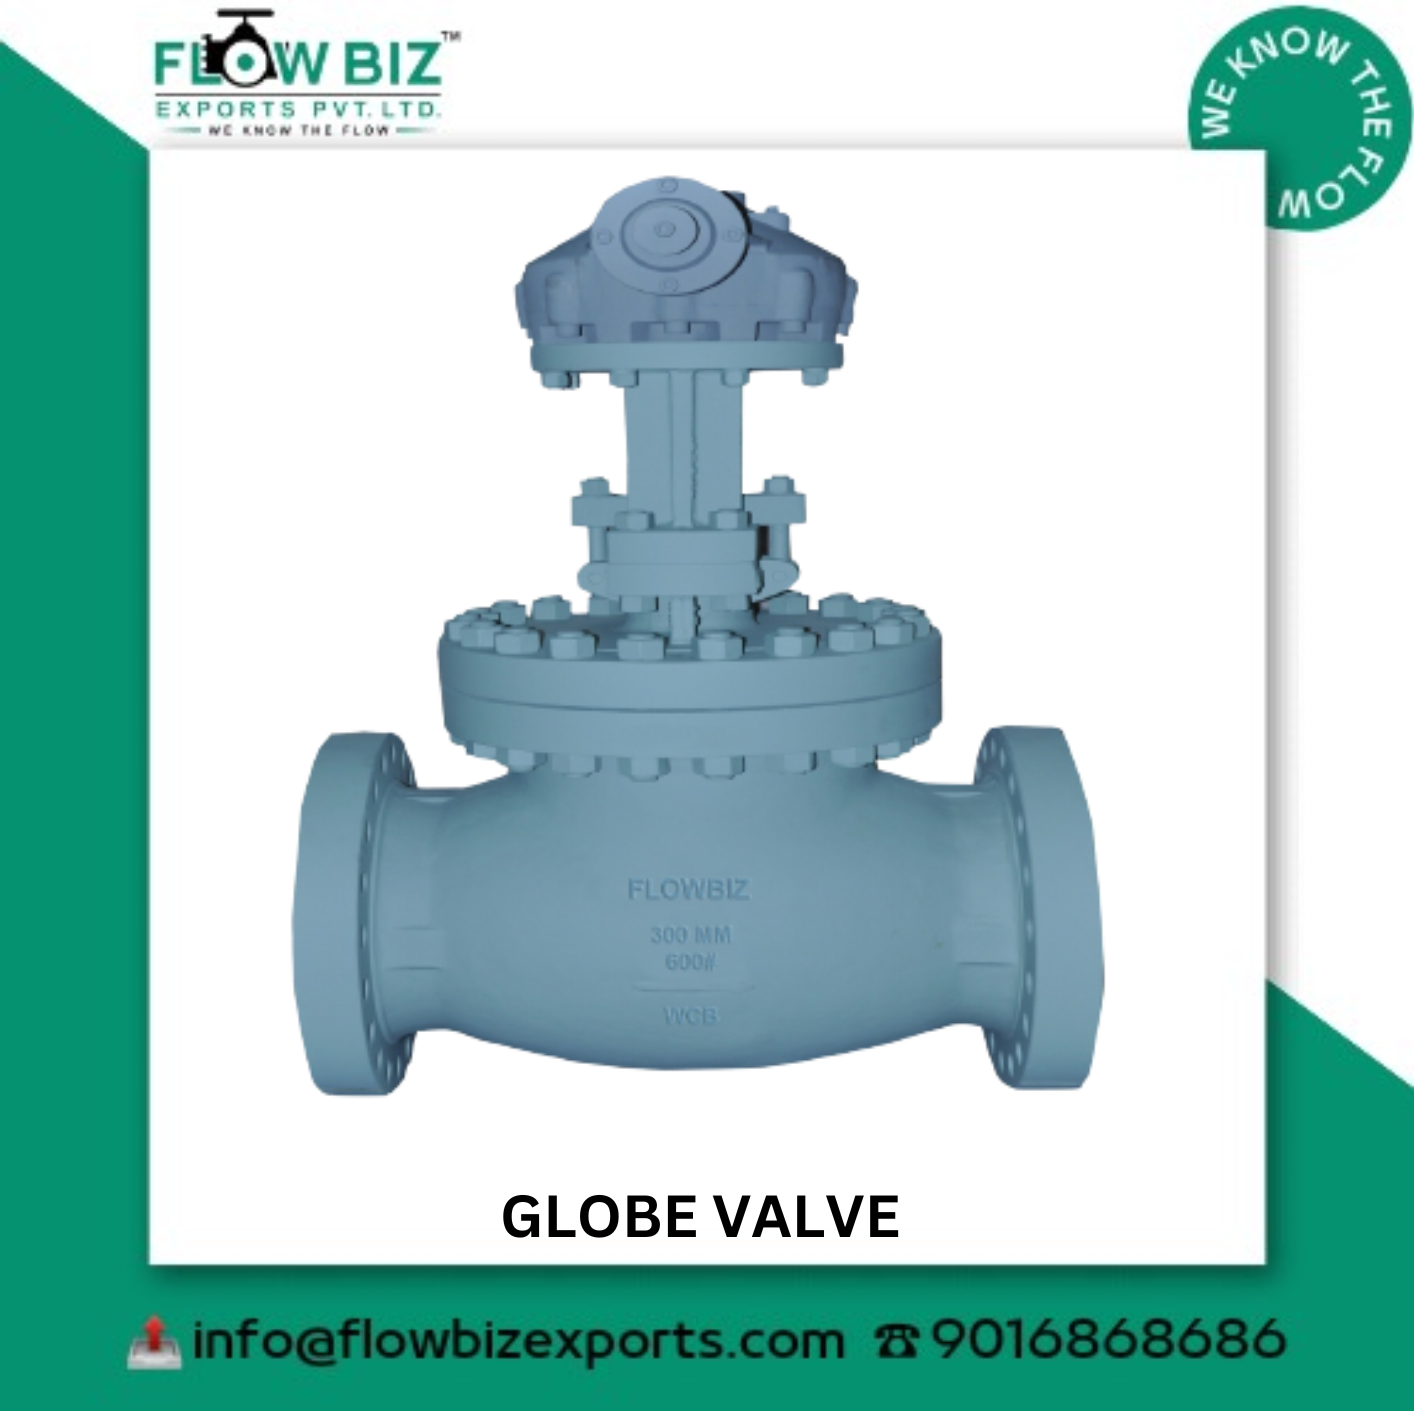 globe valve manufacturer nashik - Flowbiz